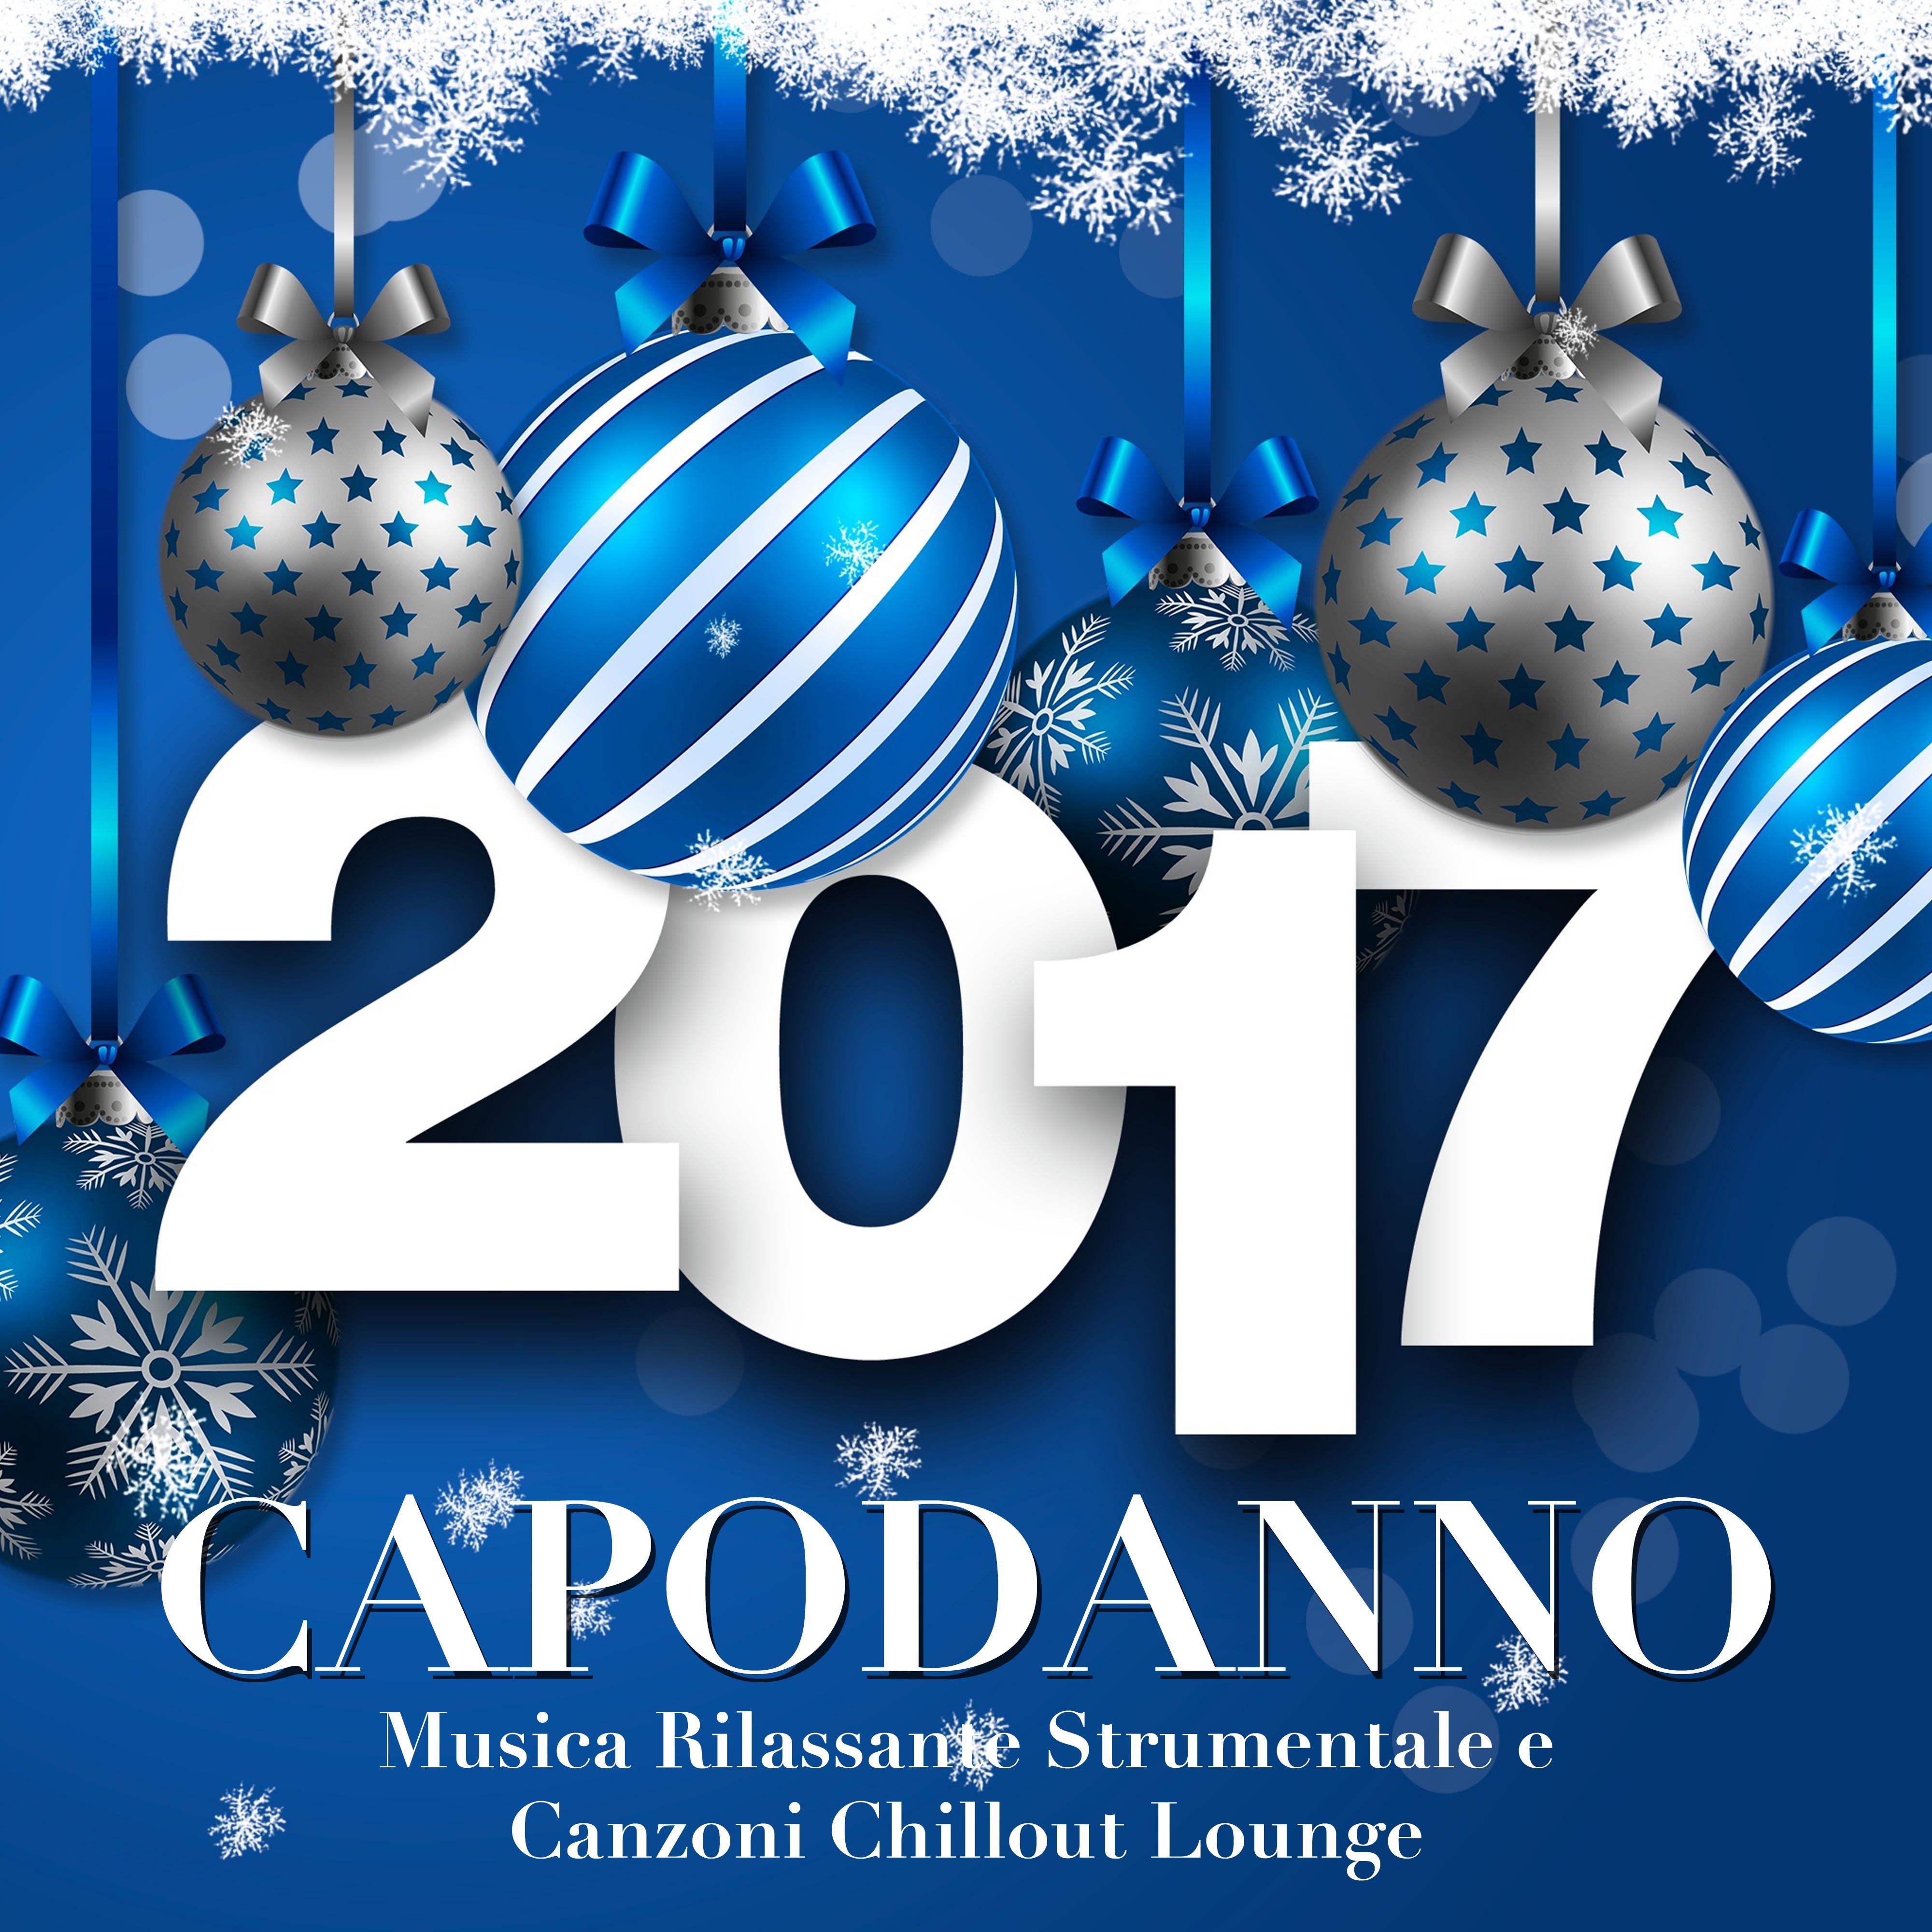 Capodanno: Musica Rilassante Strumentale e Canzoni Chillout Lounge per Festeggiare con Famiglia e Amici